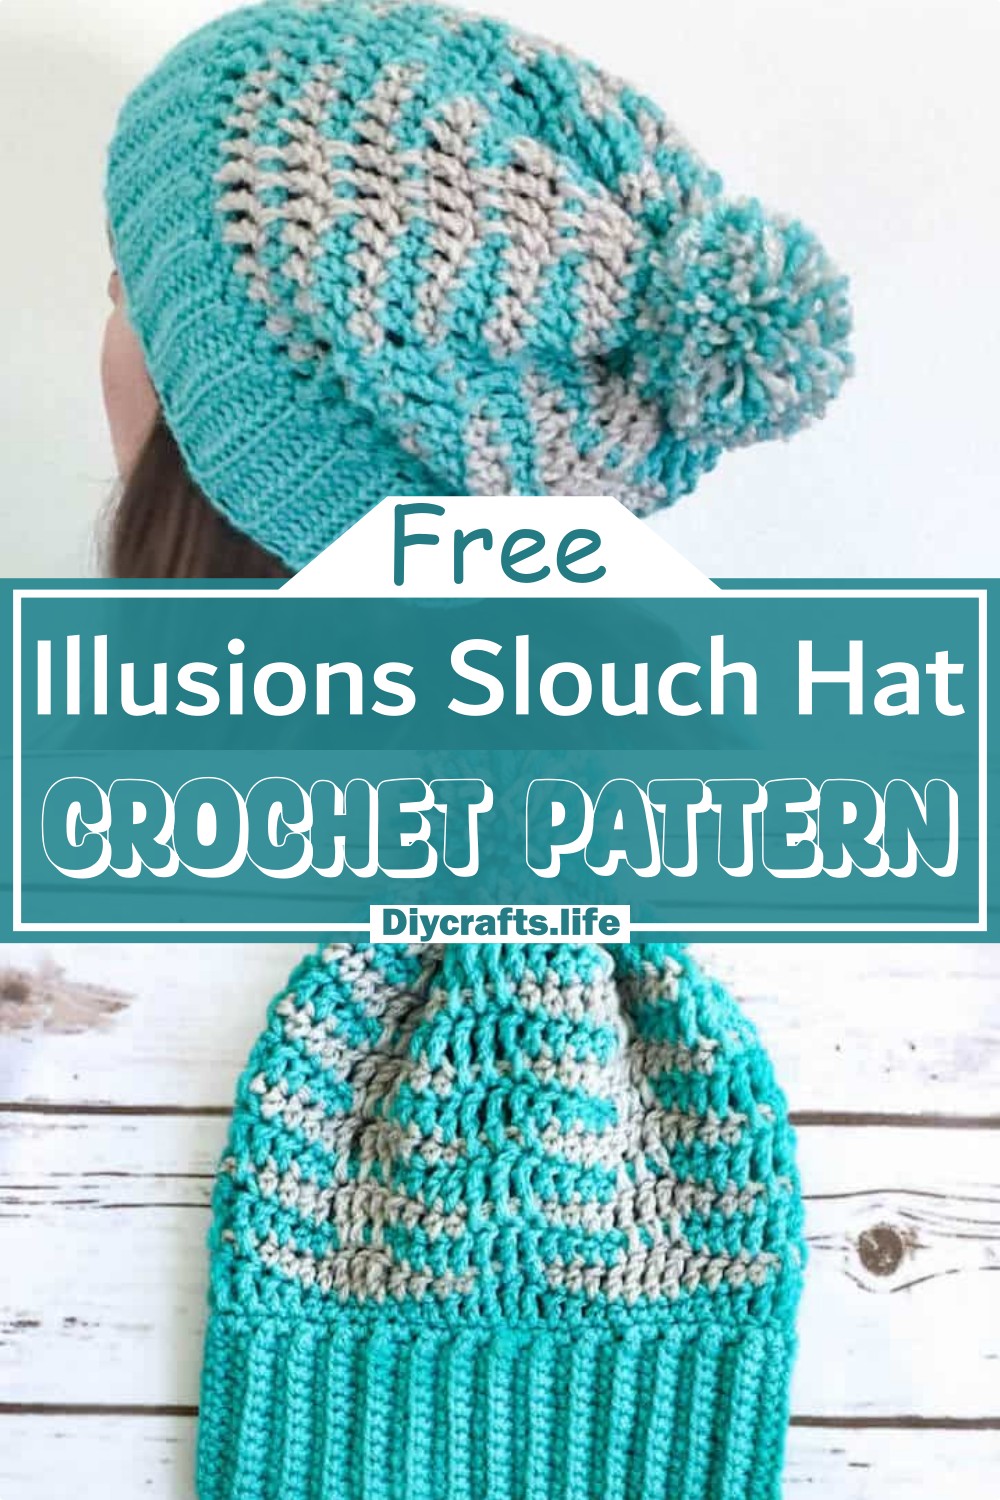 Free Crochet Plaid Hat Pattern for Kids, Women + Men » Make & Do Crew